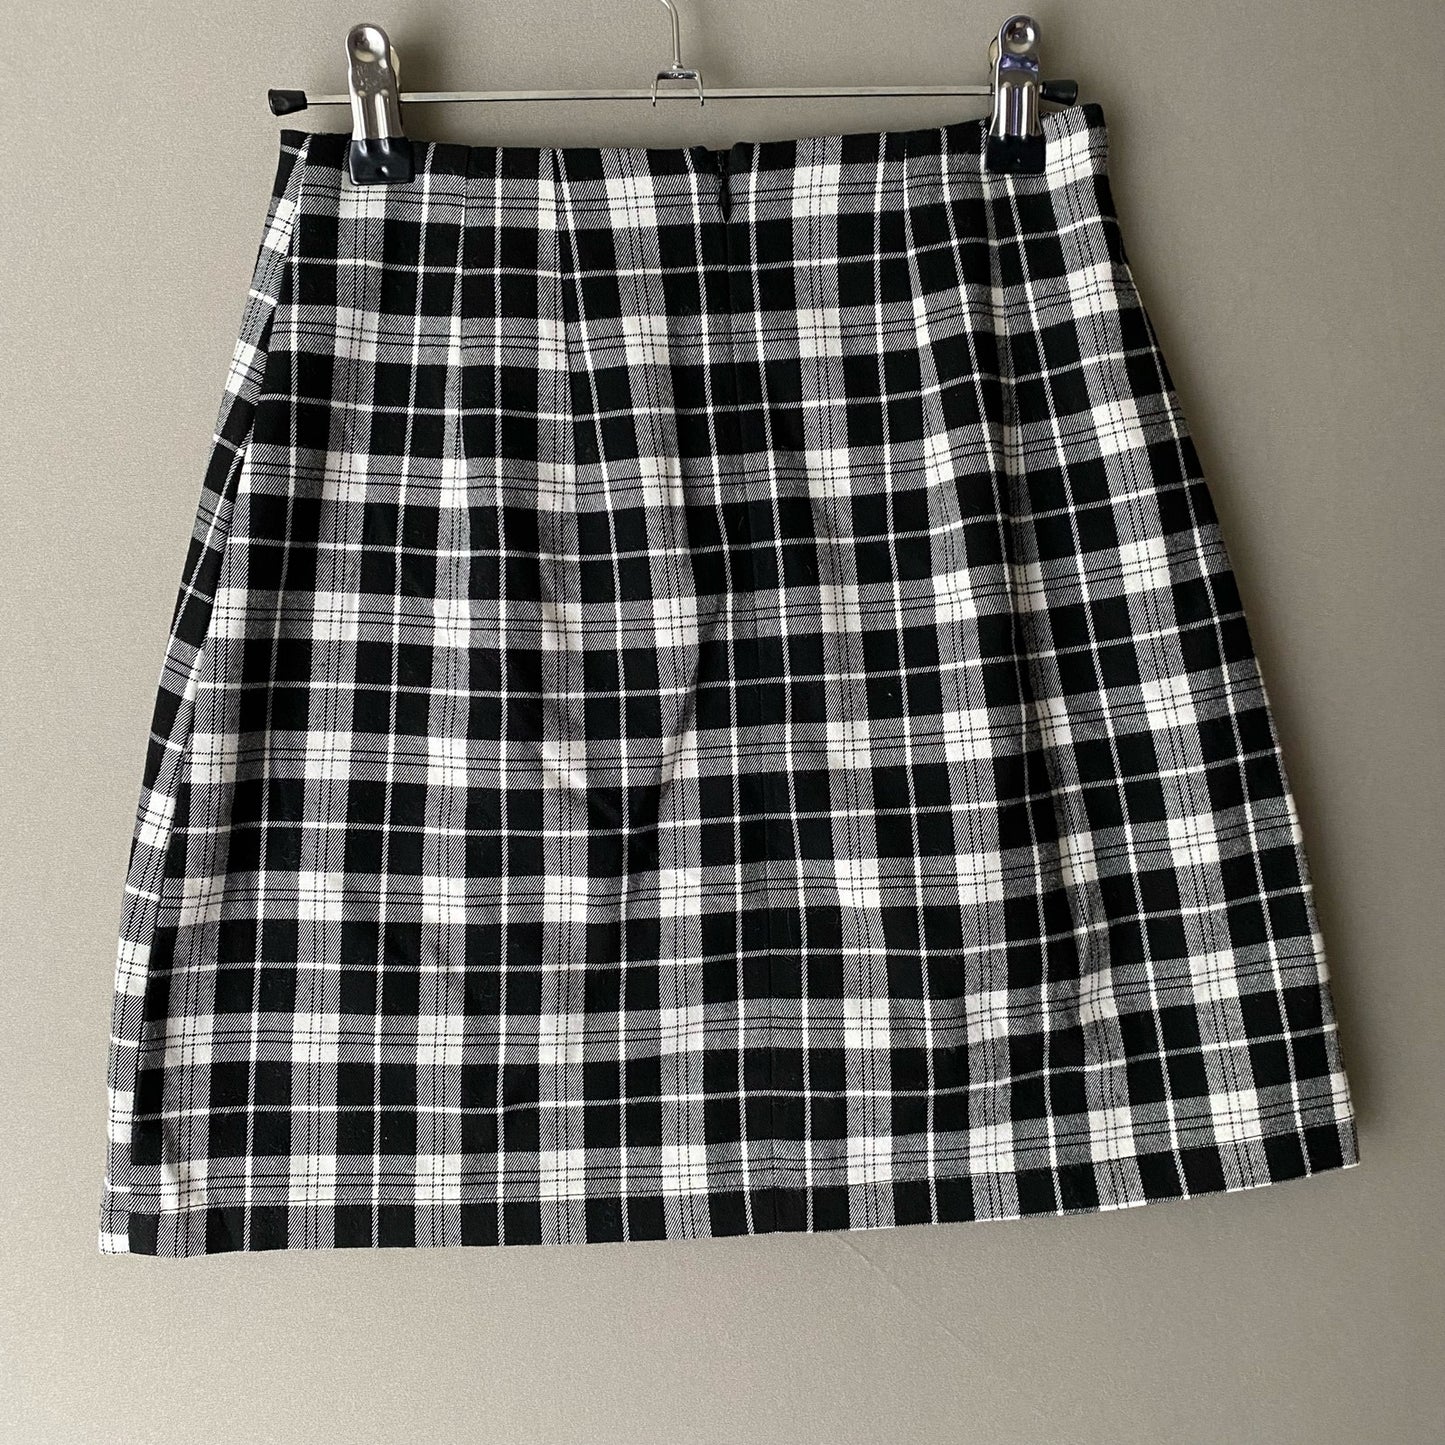 Brandy Melville John Galt sz One Size black & white cara skirt